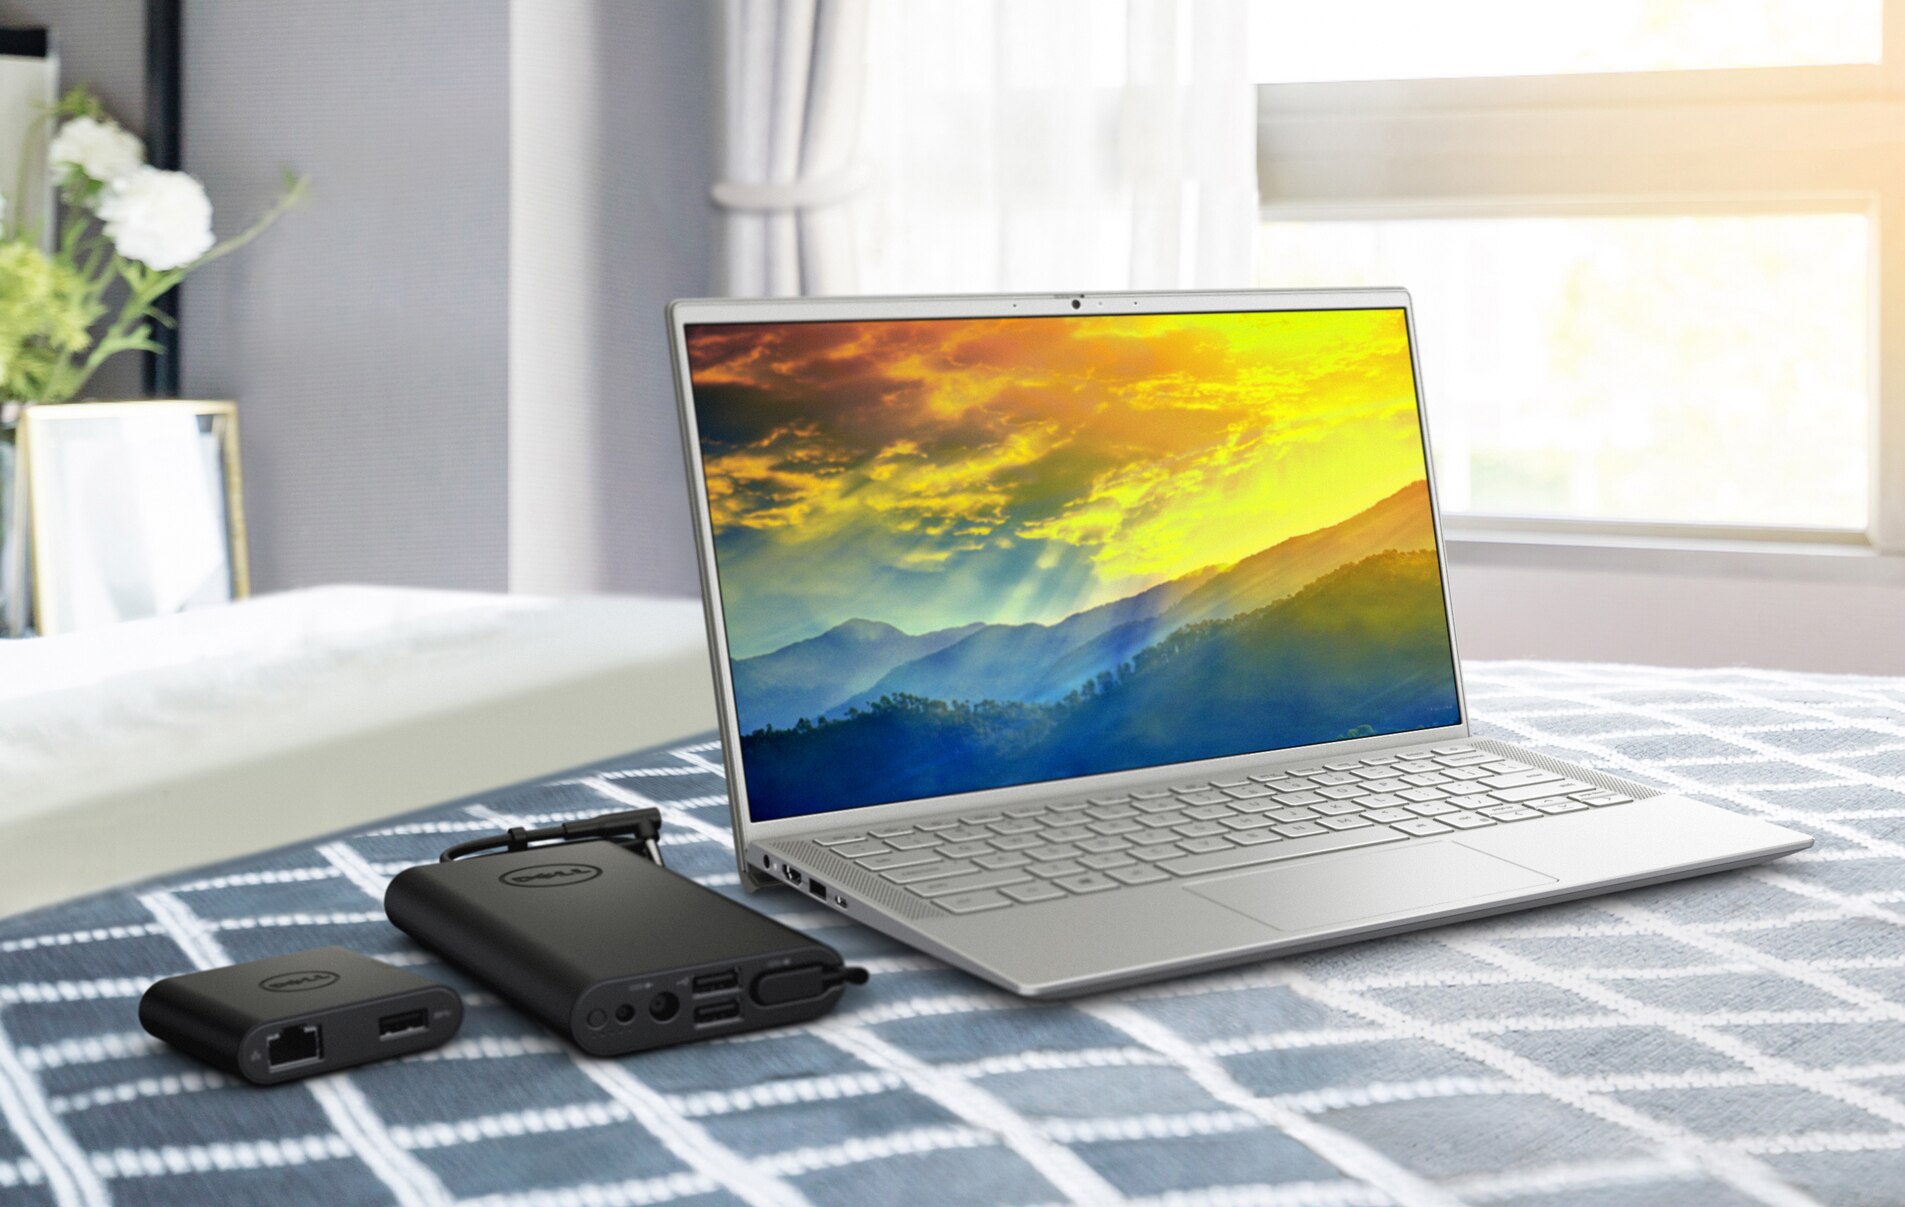 屏幕上显示着彩色背景的戴尔笔记本电脑的图片，产品旁边放着电池充电器。